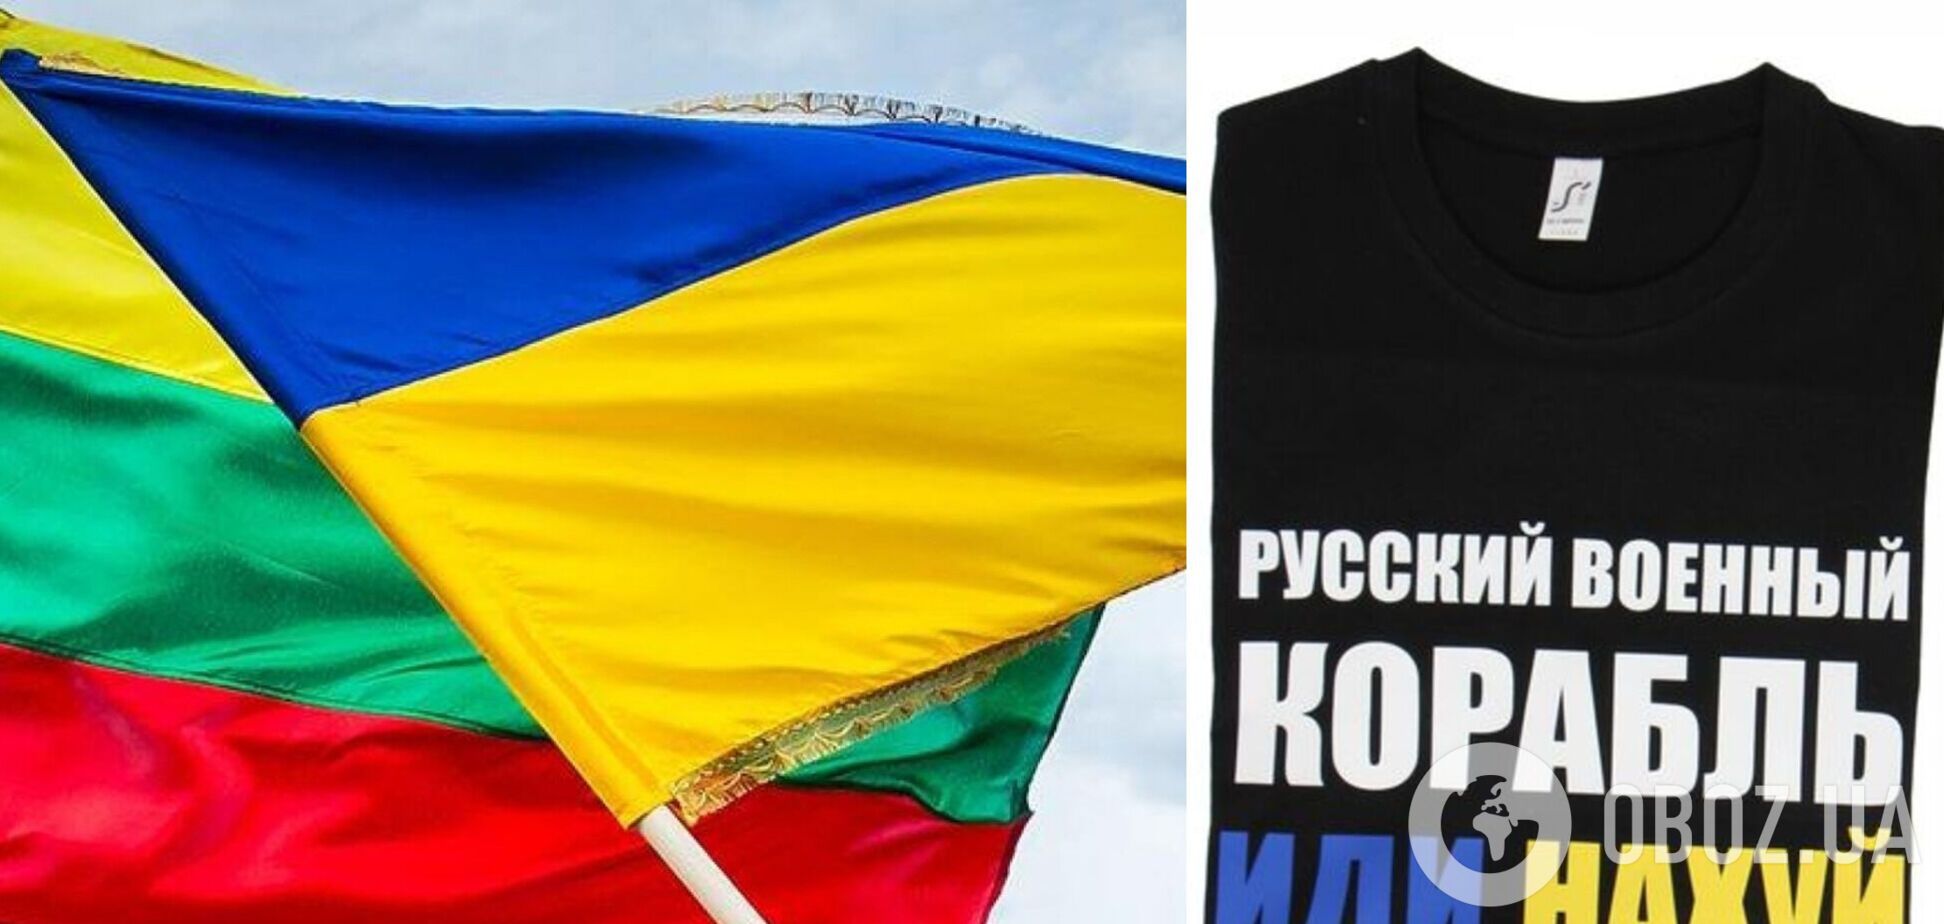 Литовський магазин направив замовнику Z-футболки майку з написом про російський військовий корабель